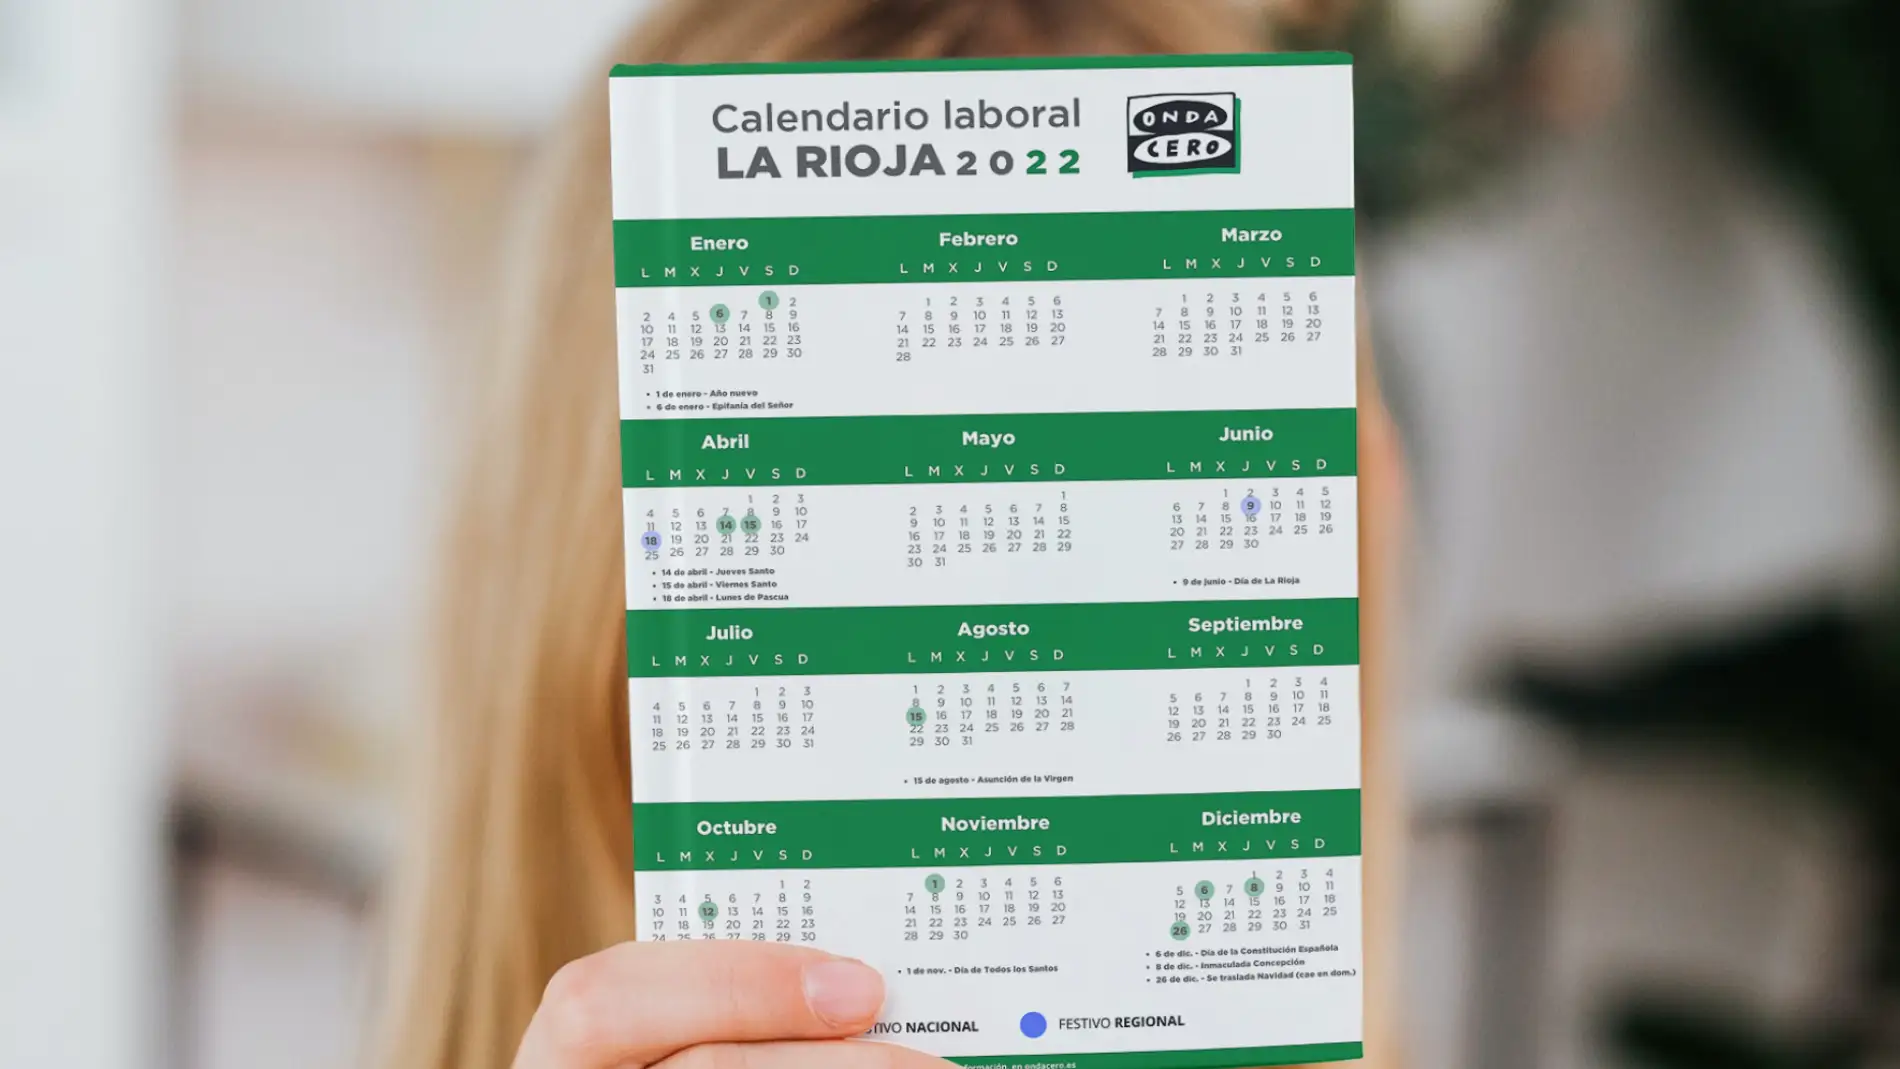 Calendario laboral en La Rioja para el año 2022